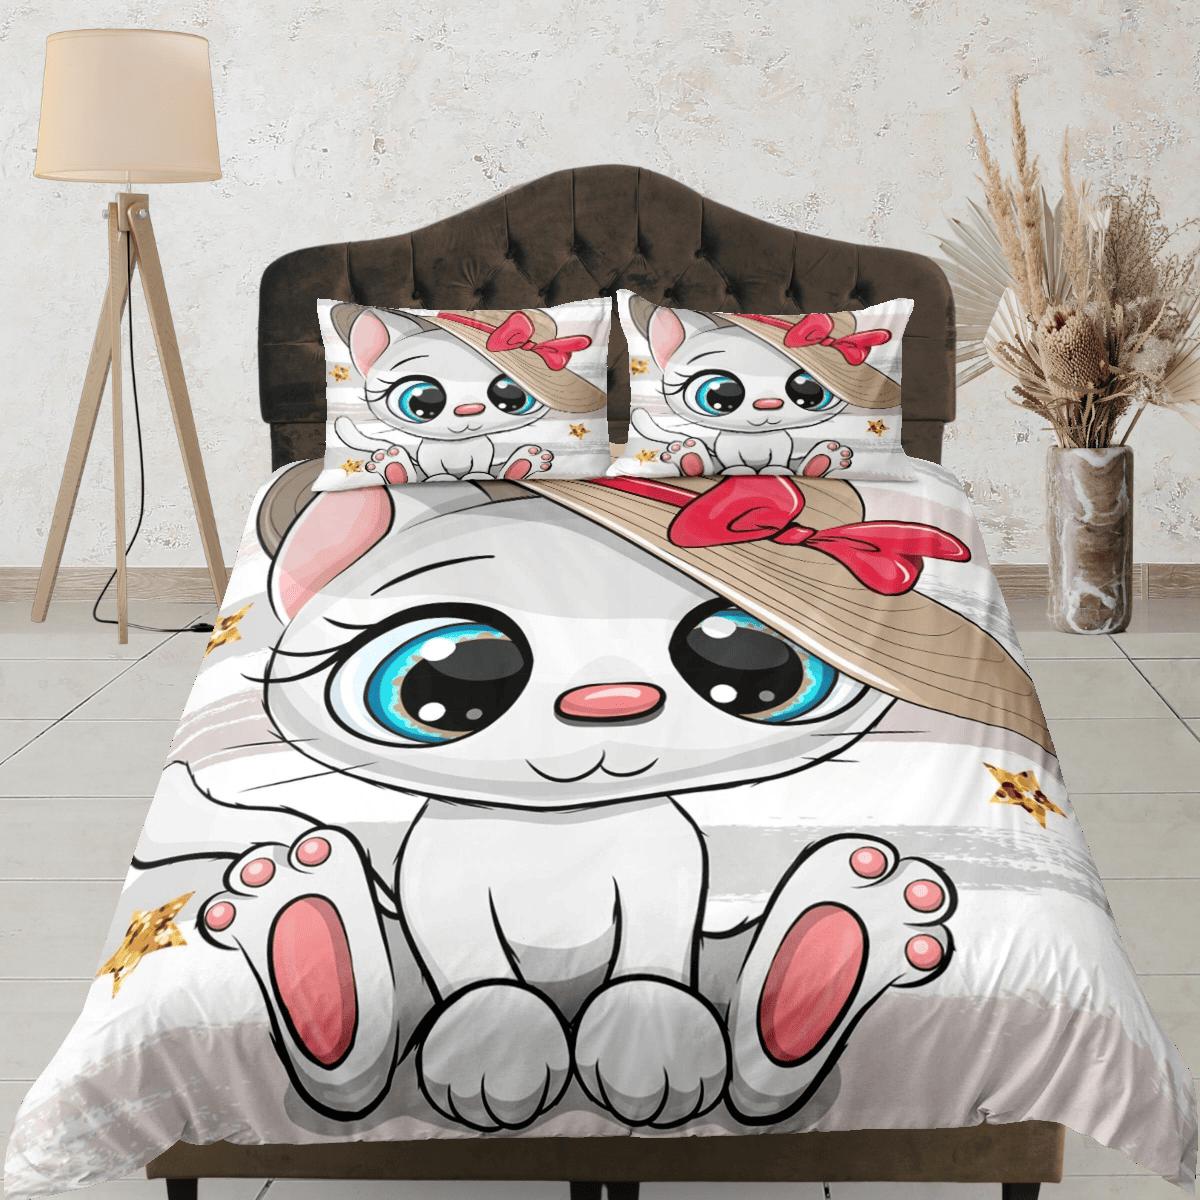 daintyduvet Charming white cat bedding, toddler bedding, kids duvet cover set, gift for cat lovers, baby bedding, baby shower gift, cute bedding